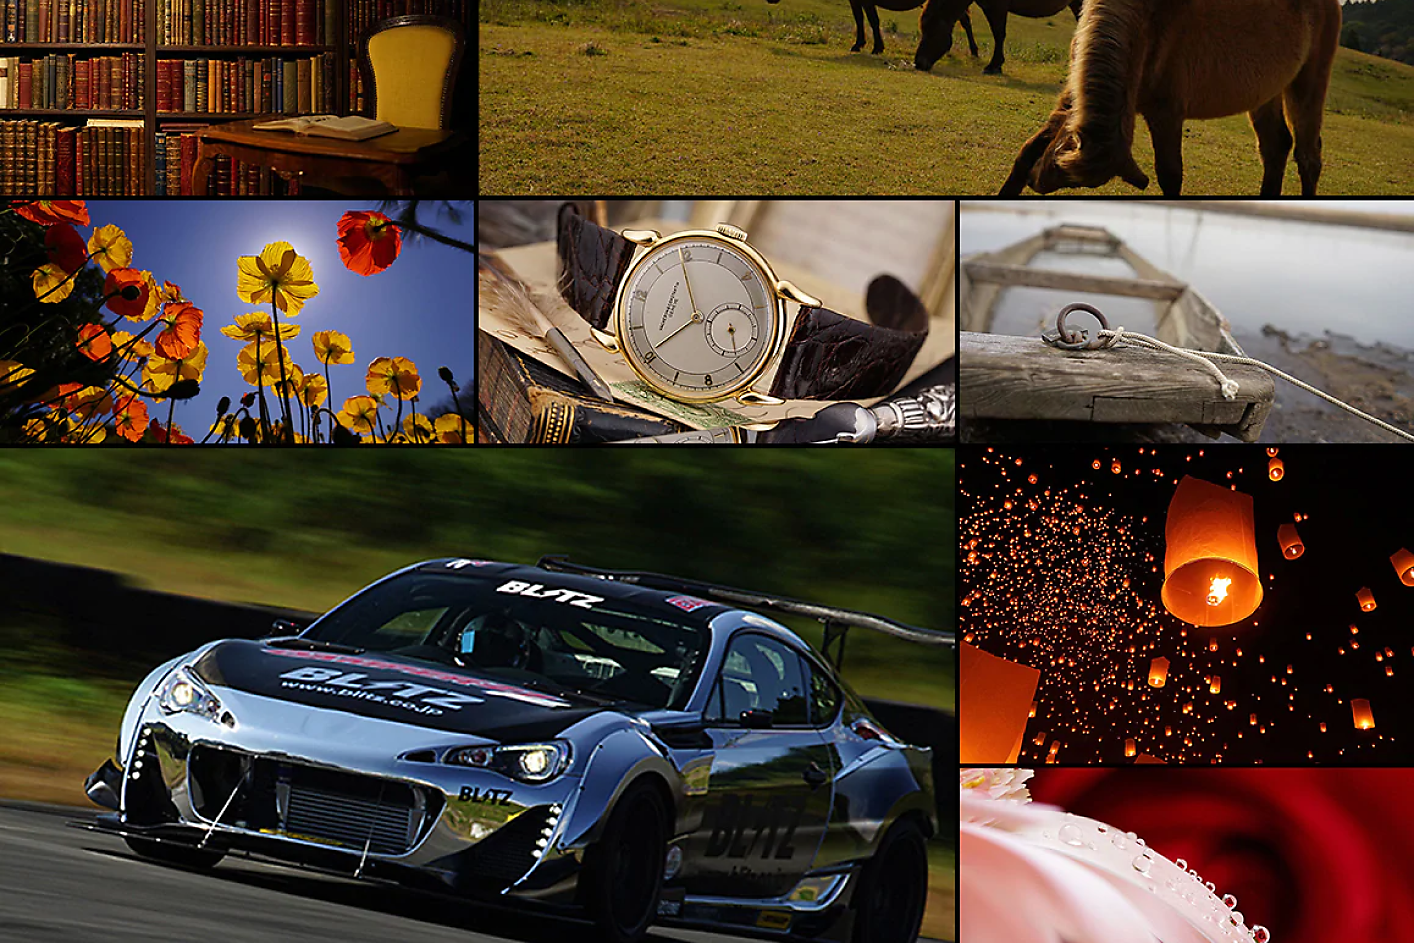 Montaje colorido de ocho imágenes, incluido un coche de carreras, un caballo, un reloj y flores